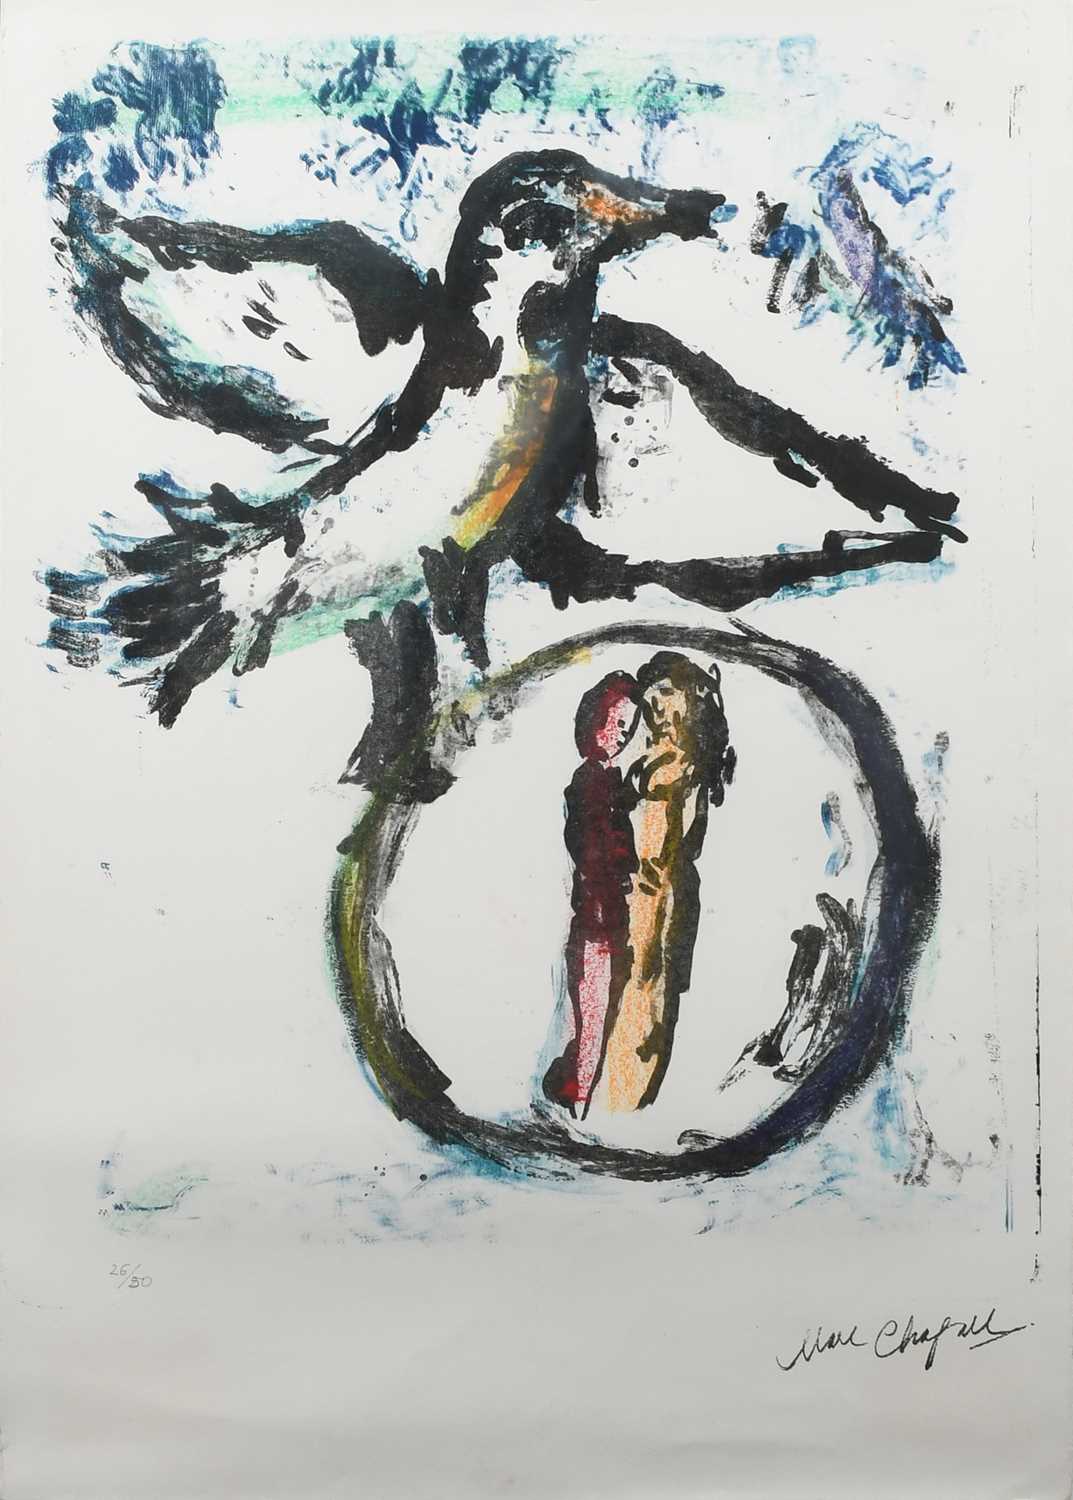 Φ After Marc Chagall L'Oiseau Vert Numbered 26/50 (in pencil to margin) Reproduction print 76.2 x